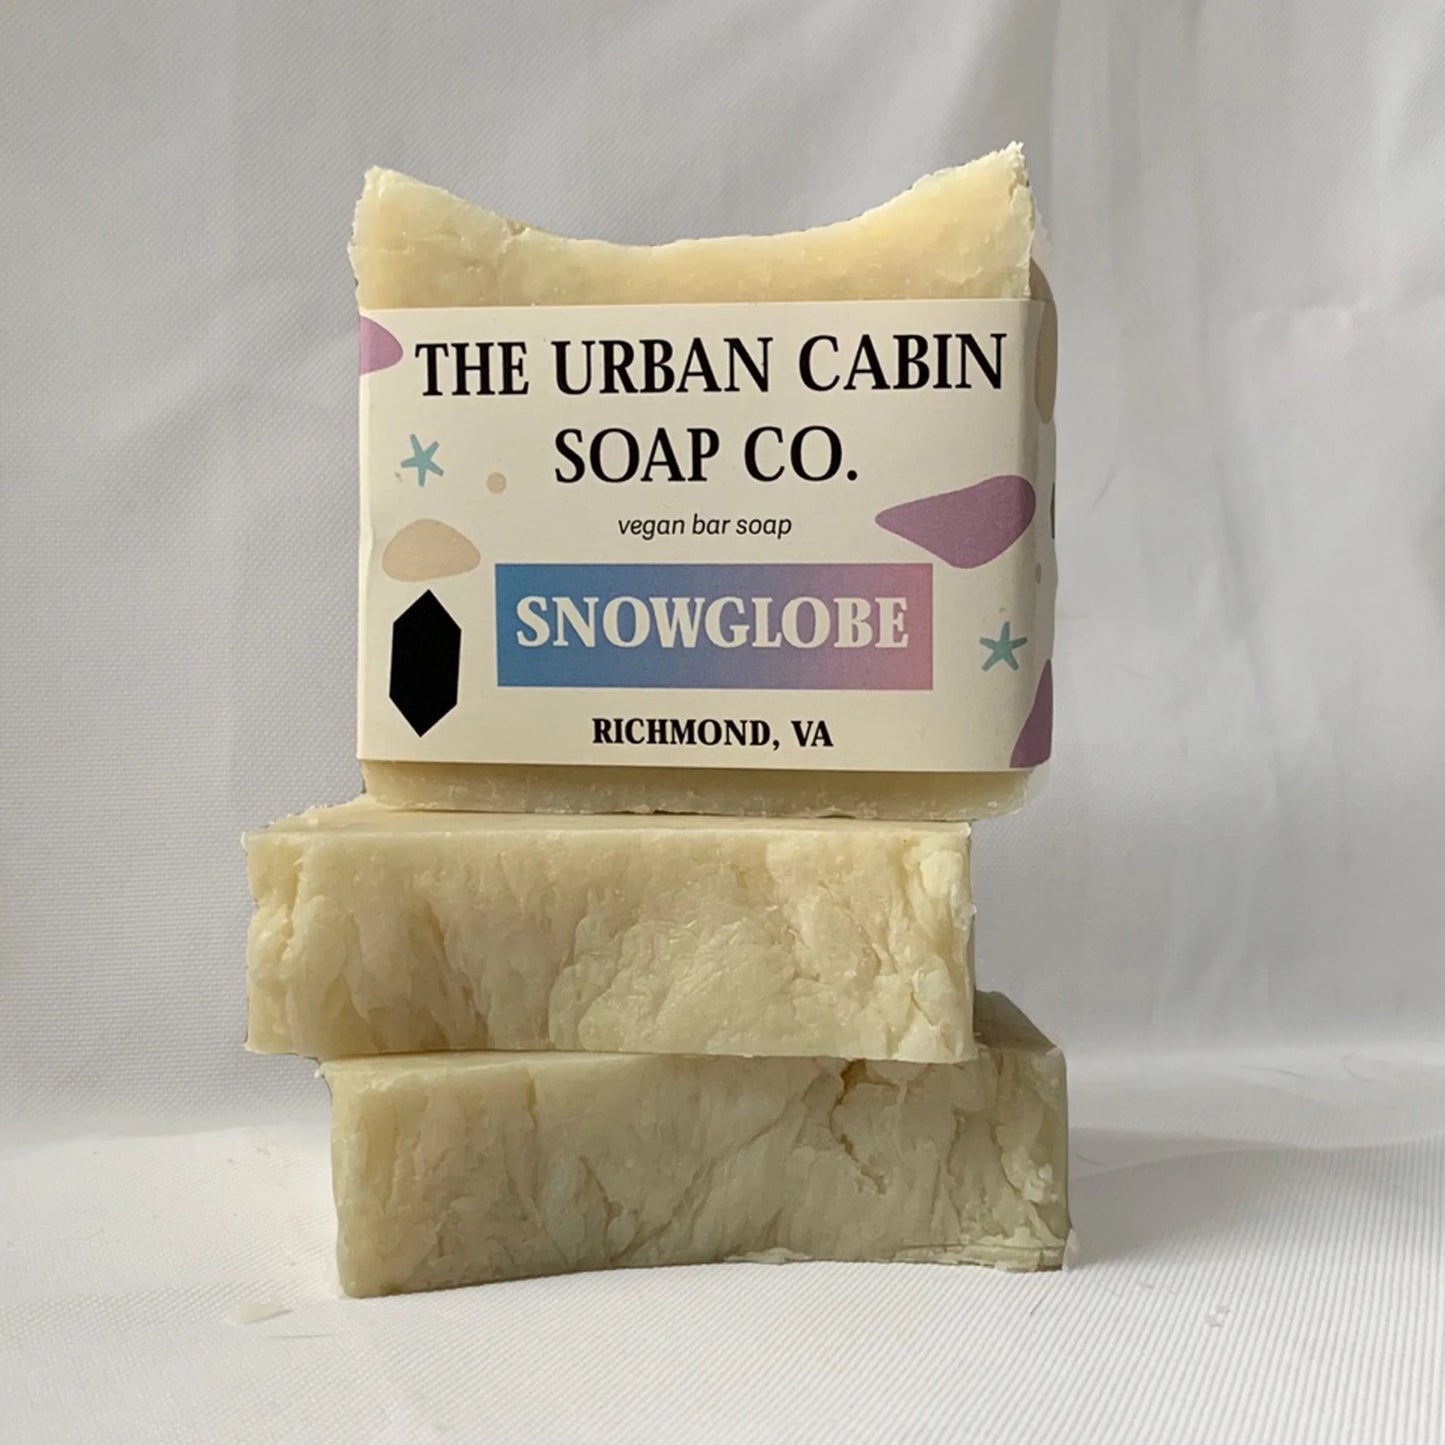 The Urban Cabin Soap Co. Soap Bars